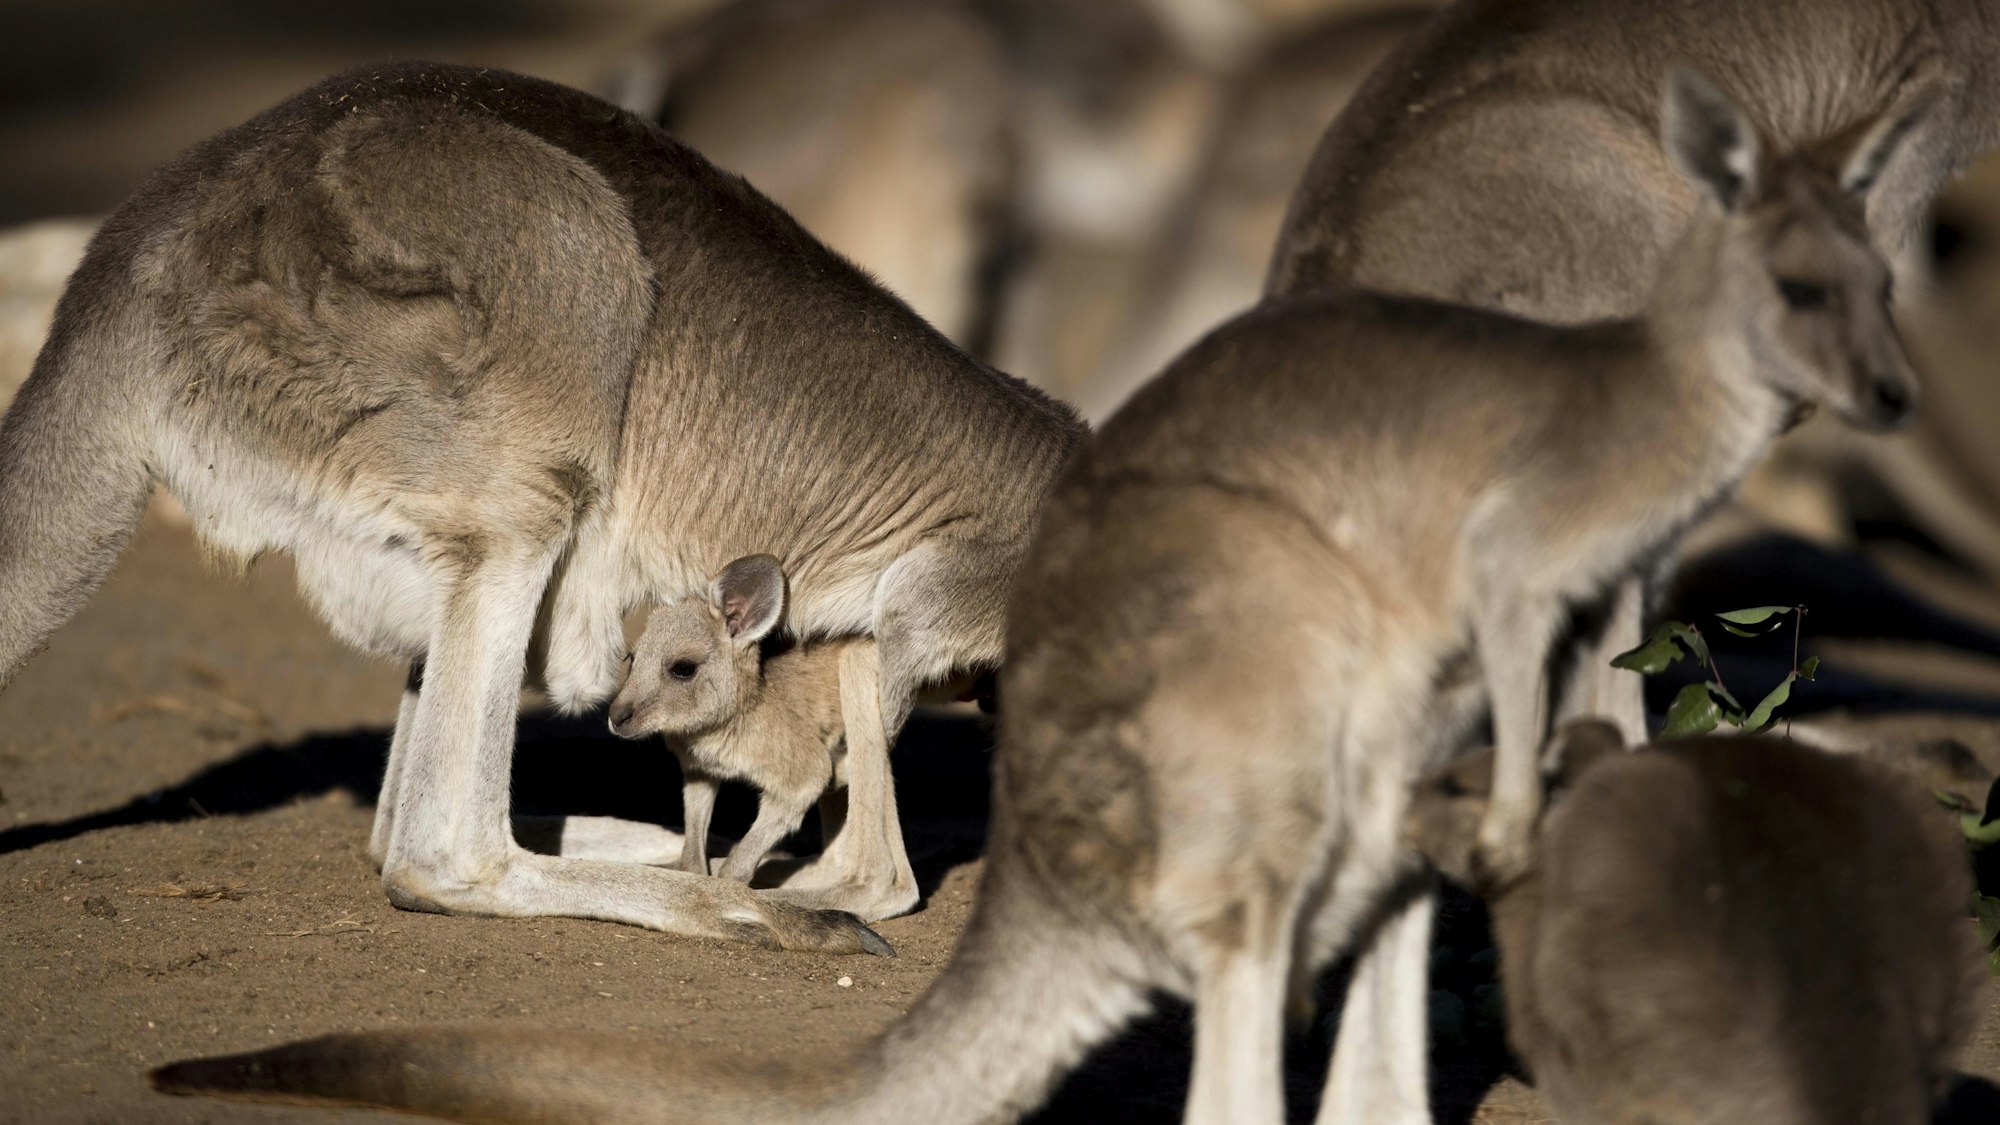 In Australien wurden mehrere Kängurus sinnlos zu Tode geprügelt. Auf dem Foto (aufgenommen am 5. Februar 2014 in Israel) sieht man mehrere graue Riesenkängurus.